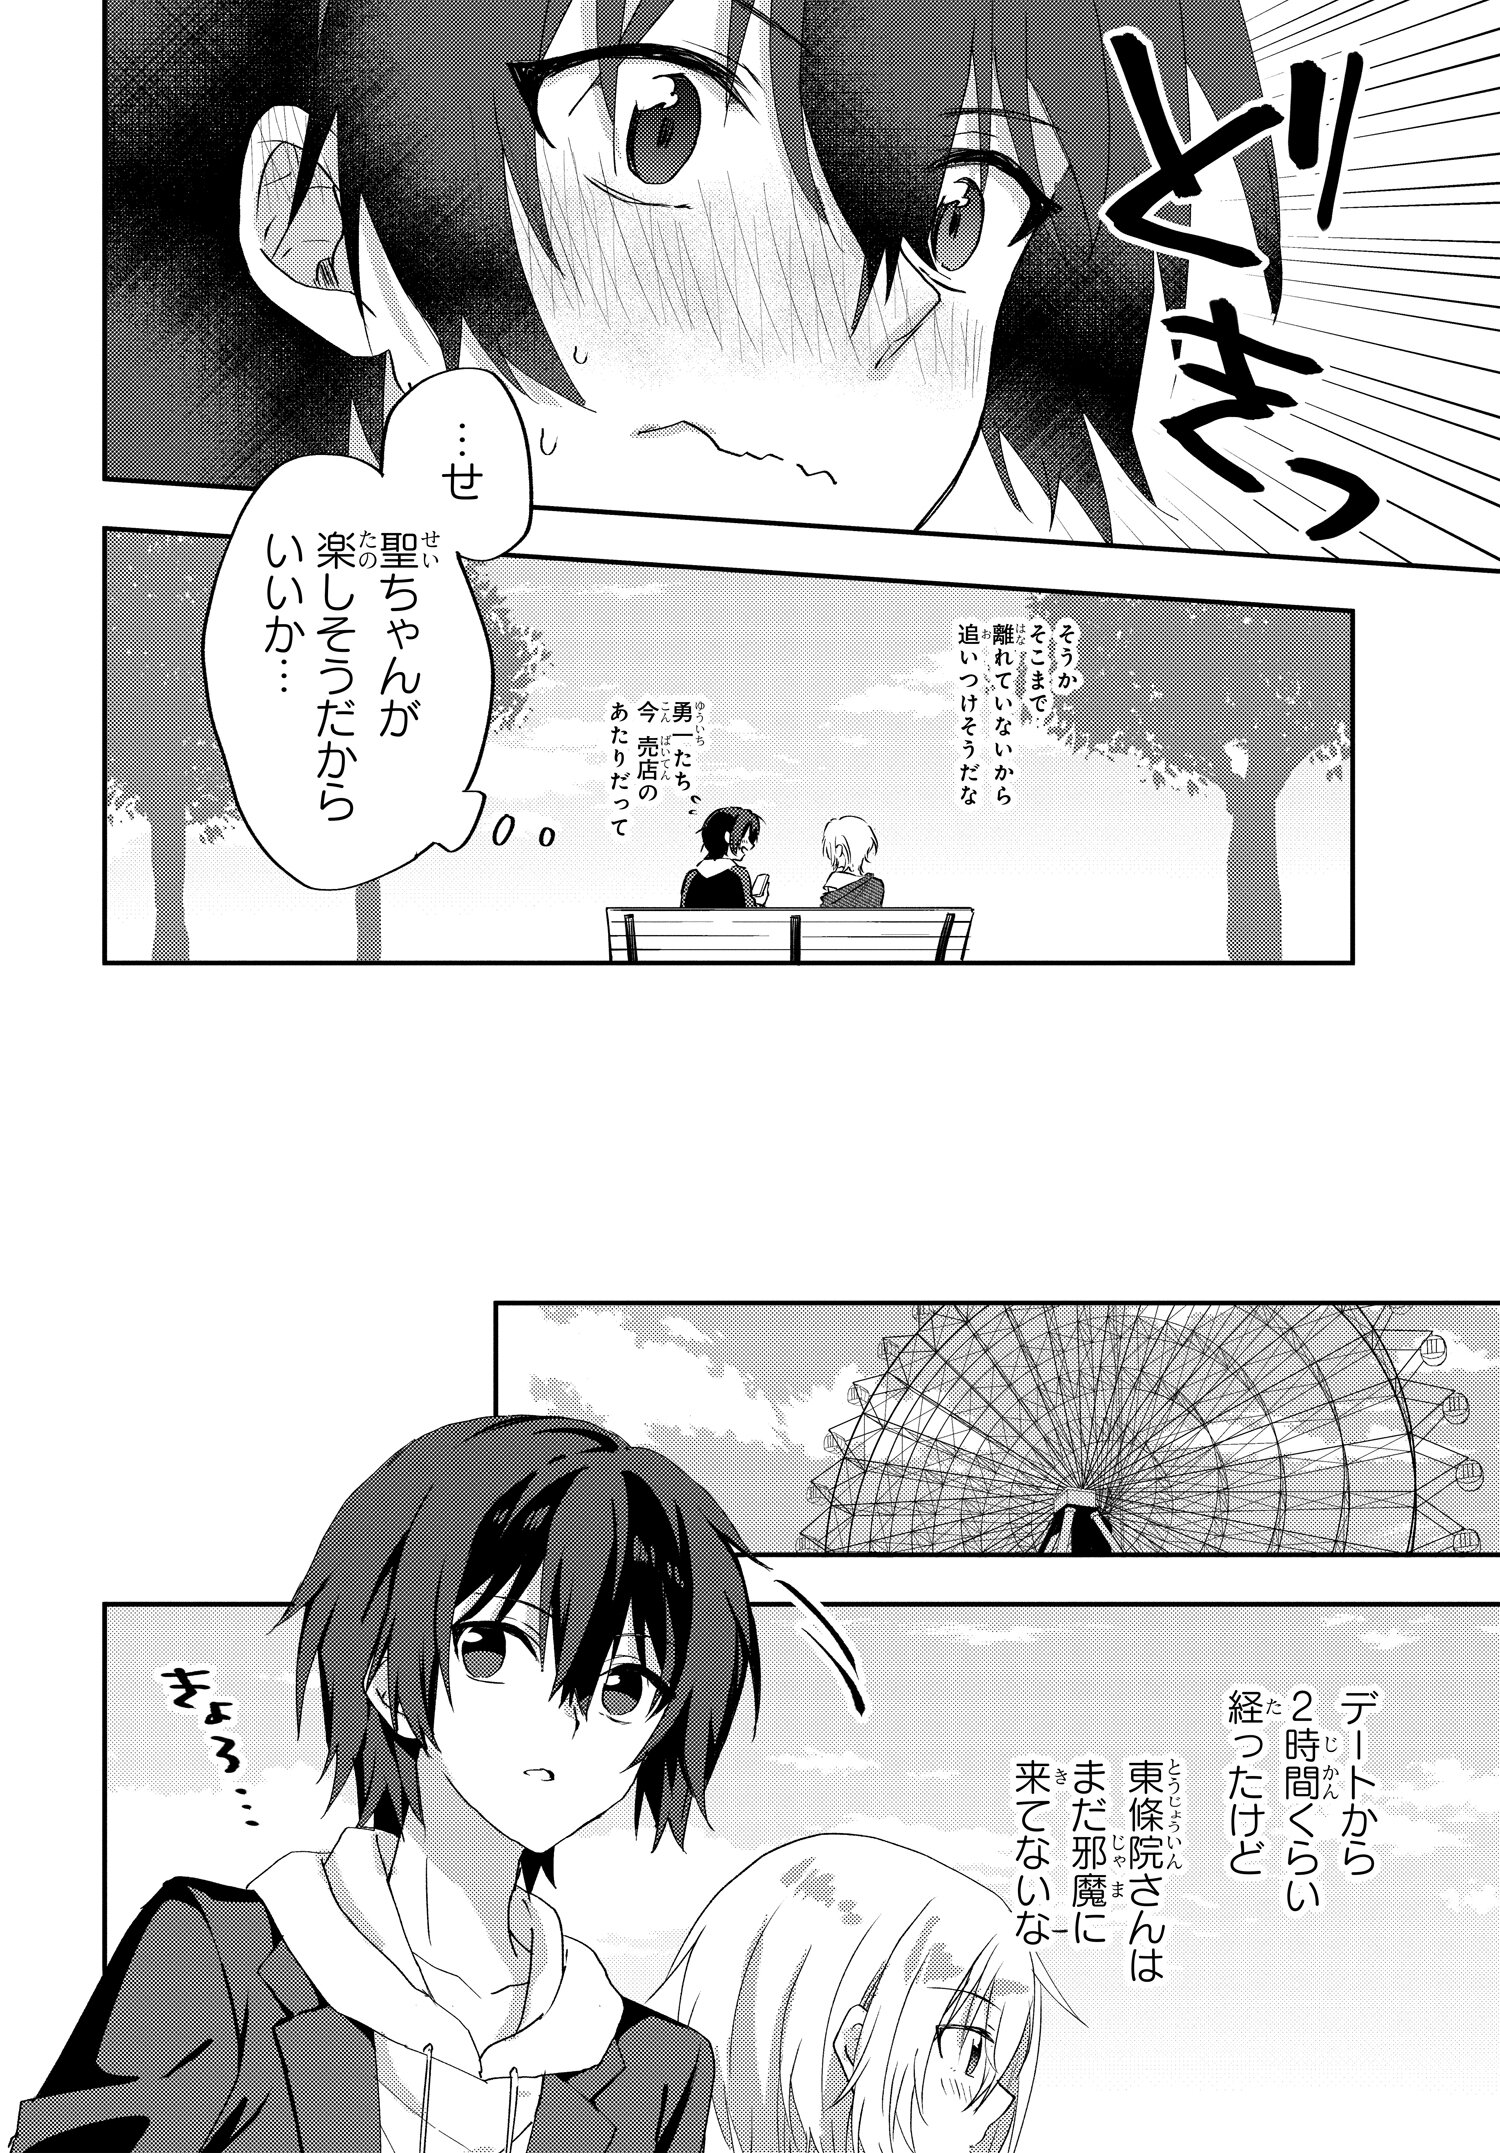 Romcom Manga ni Haitte Shimatta no de, Oshi no Make Heroine wo Zenryoku de Shiawase ni suru - Chapter 7.1 - Page 10